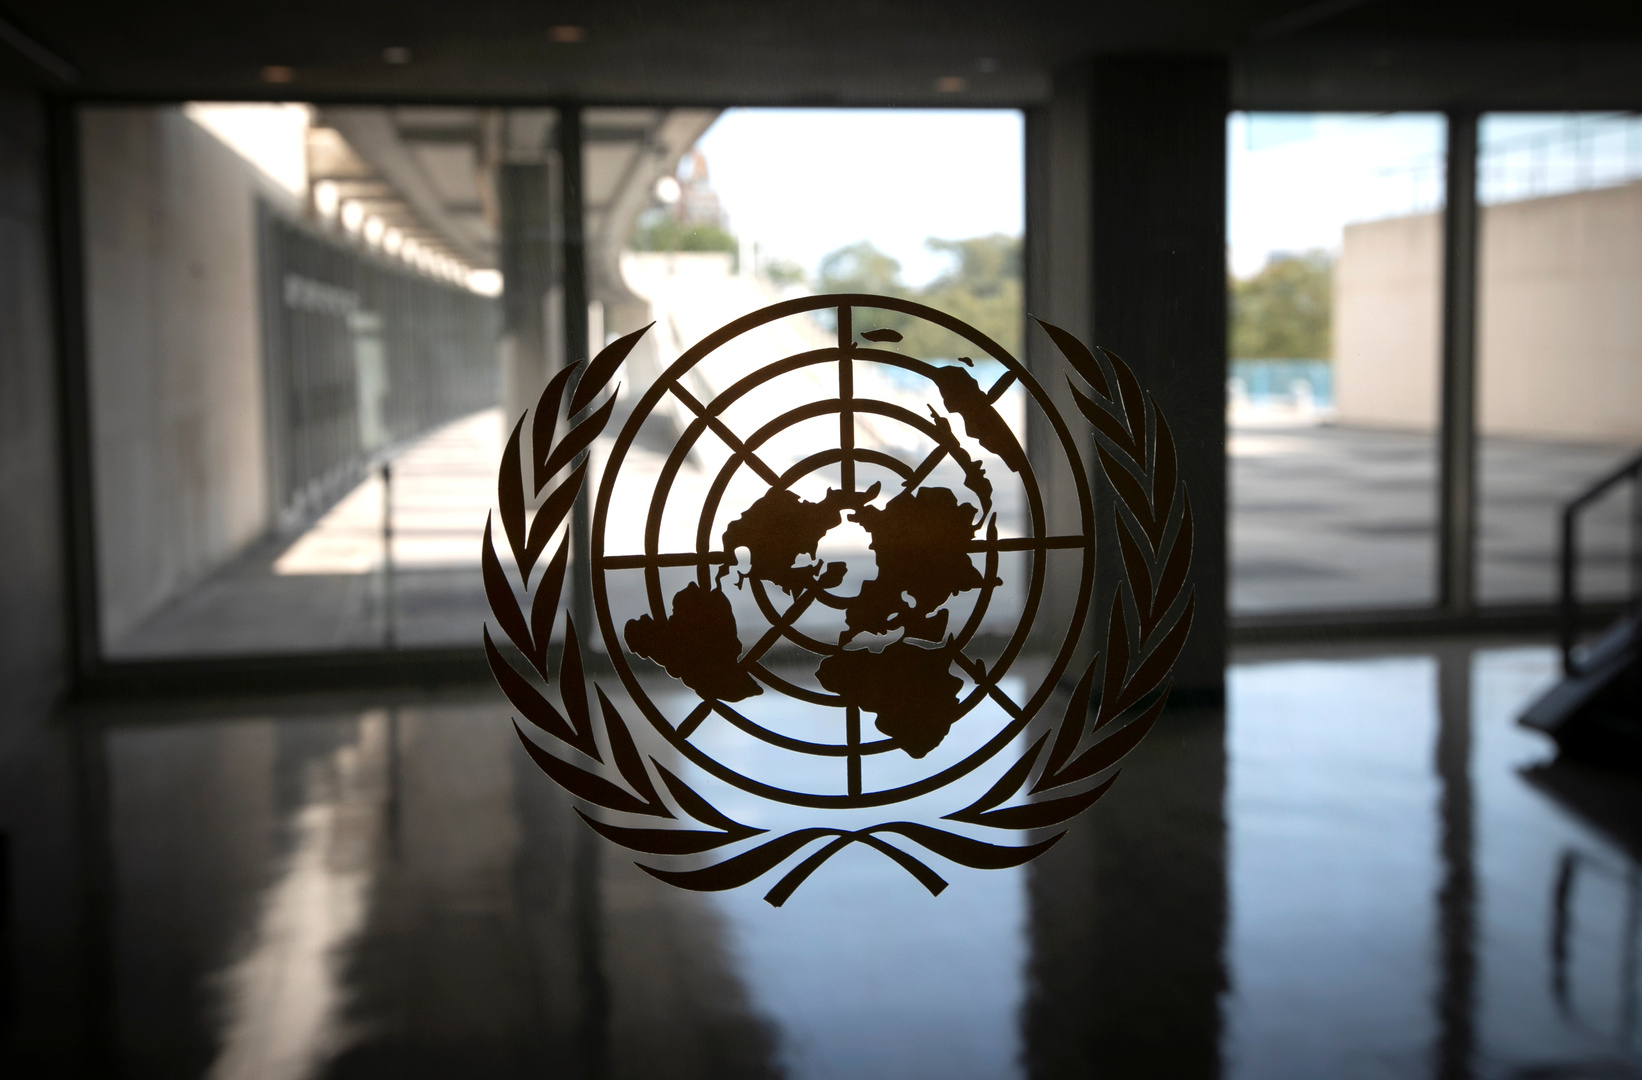 في ذكرى تأسيسها الـ75.. مدفيديف: الأمم المتحدة حالت دون وقع حرب عالمية ثالثة